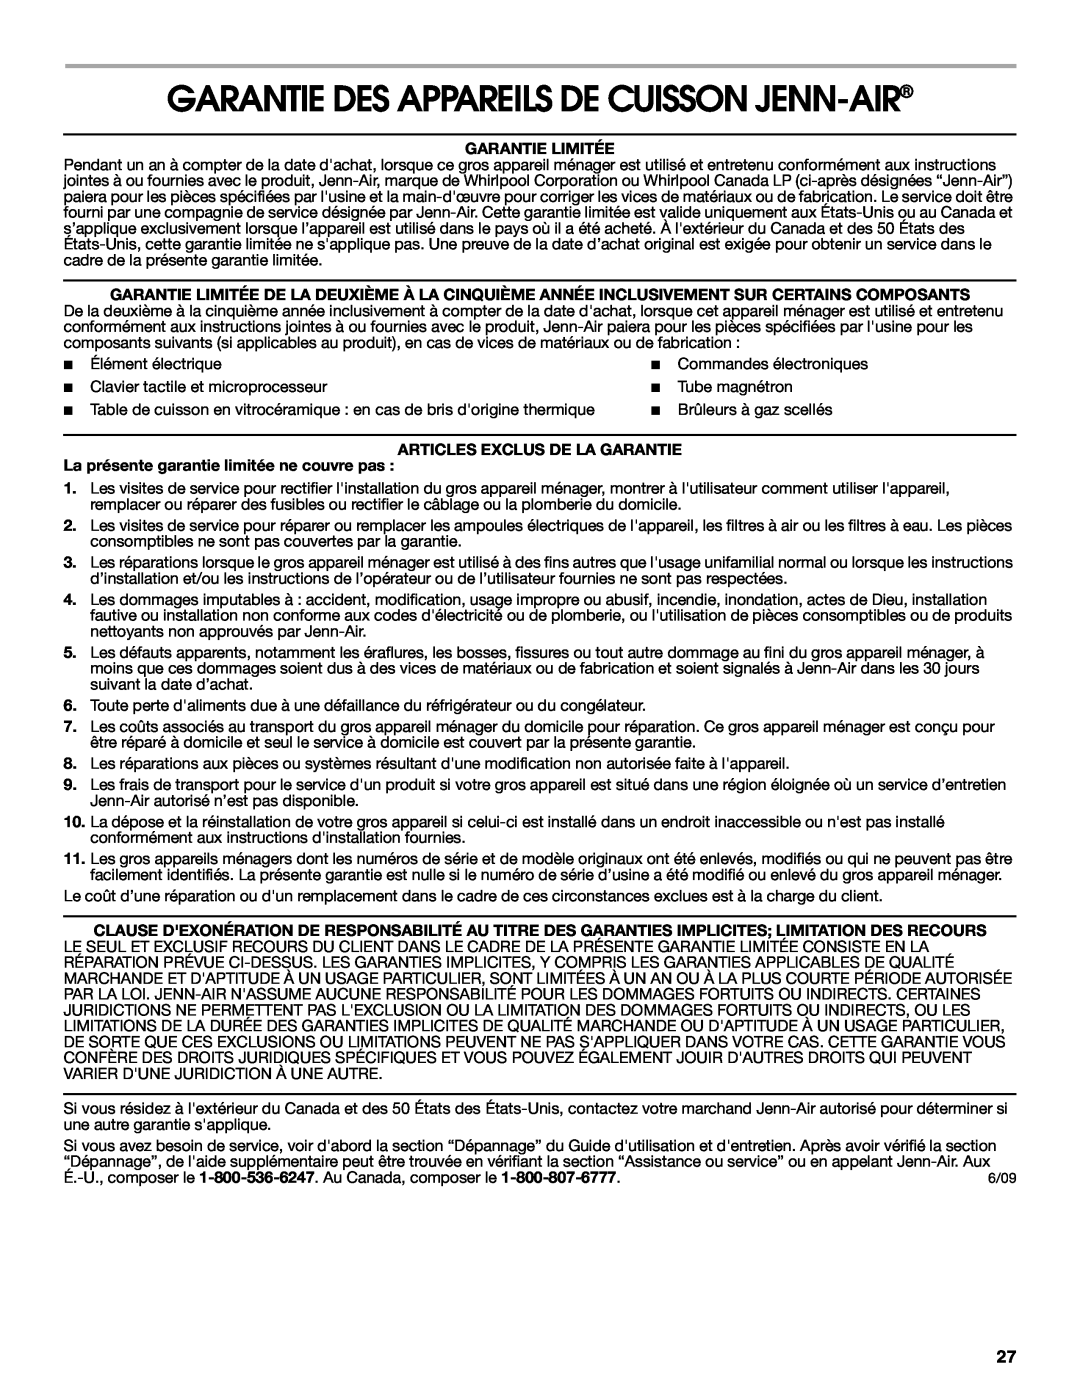 Jenn-Air JIC4430X manual Garantie Des Appareils De Cuisson Jenn-Air, Garantie Limitée, Articles Exclus De La Garantie 